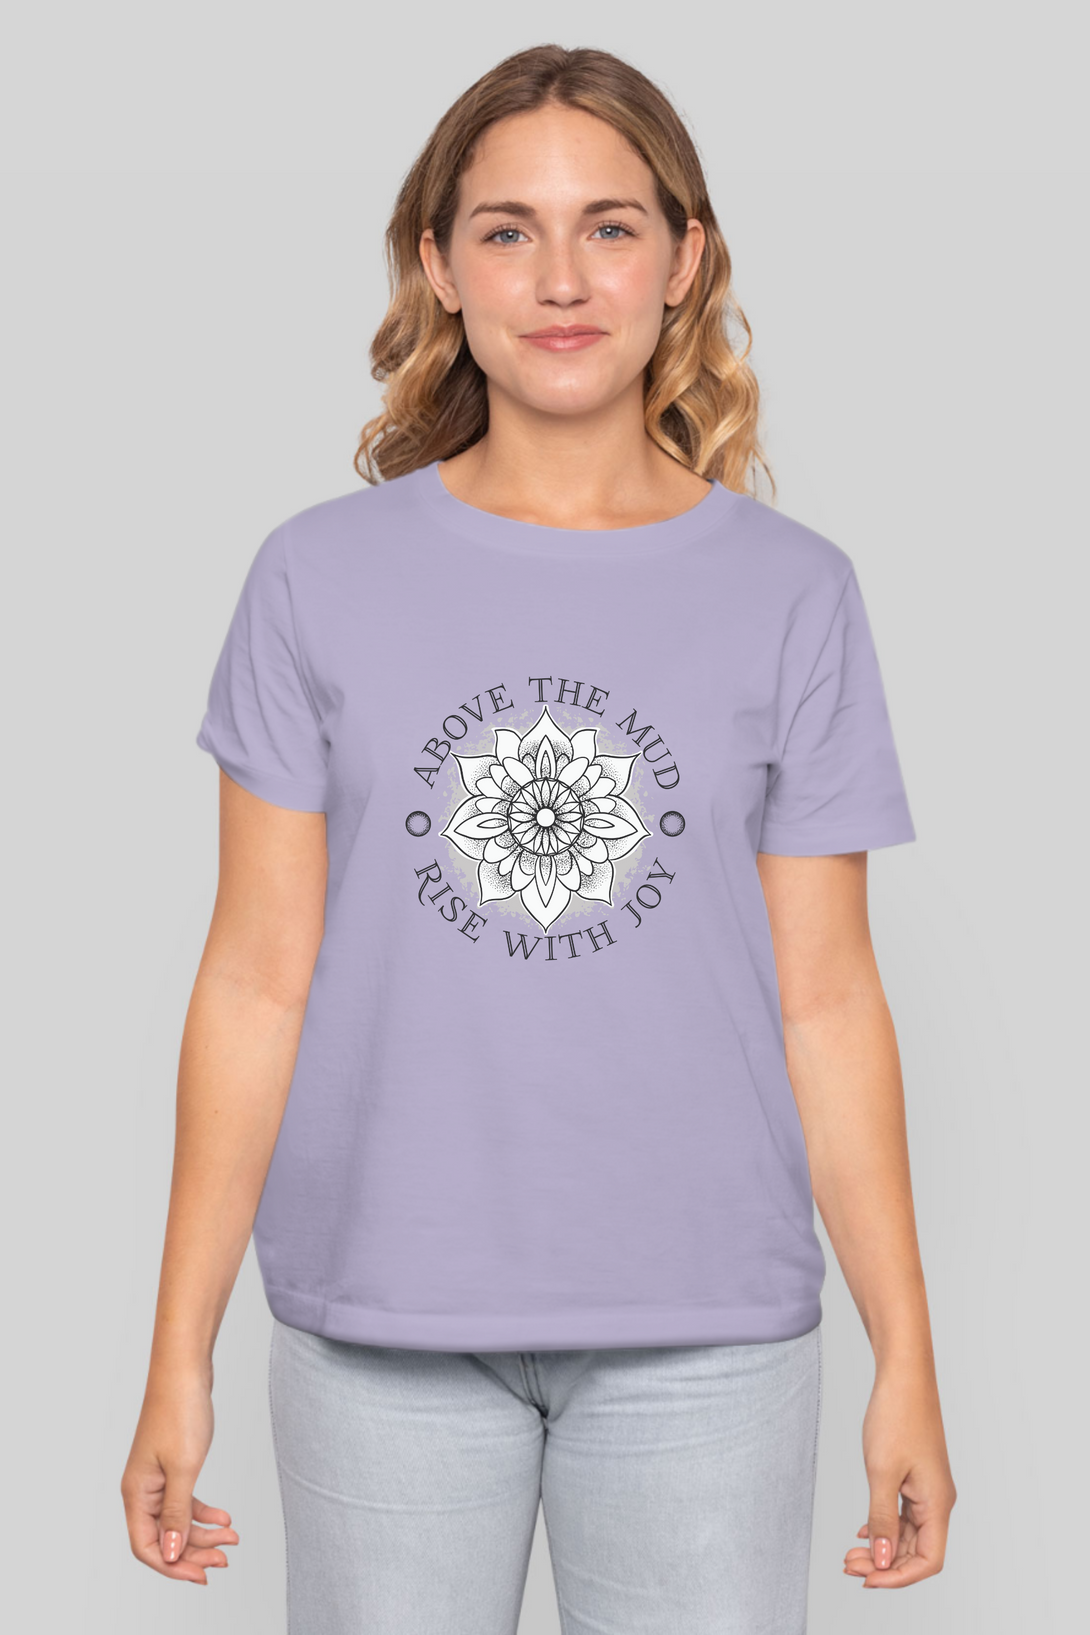 Mandala Lotus Printed T-Shirt For Women - WowWaves - 8